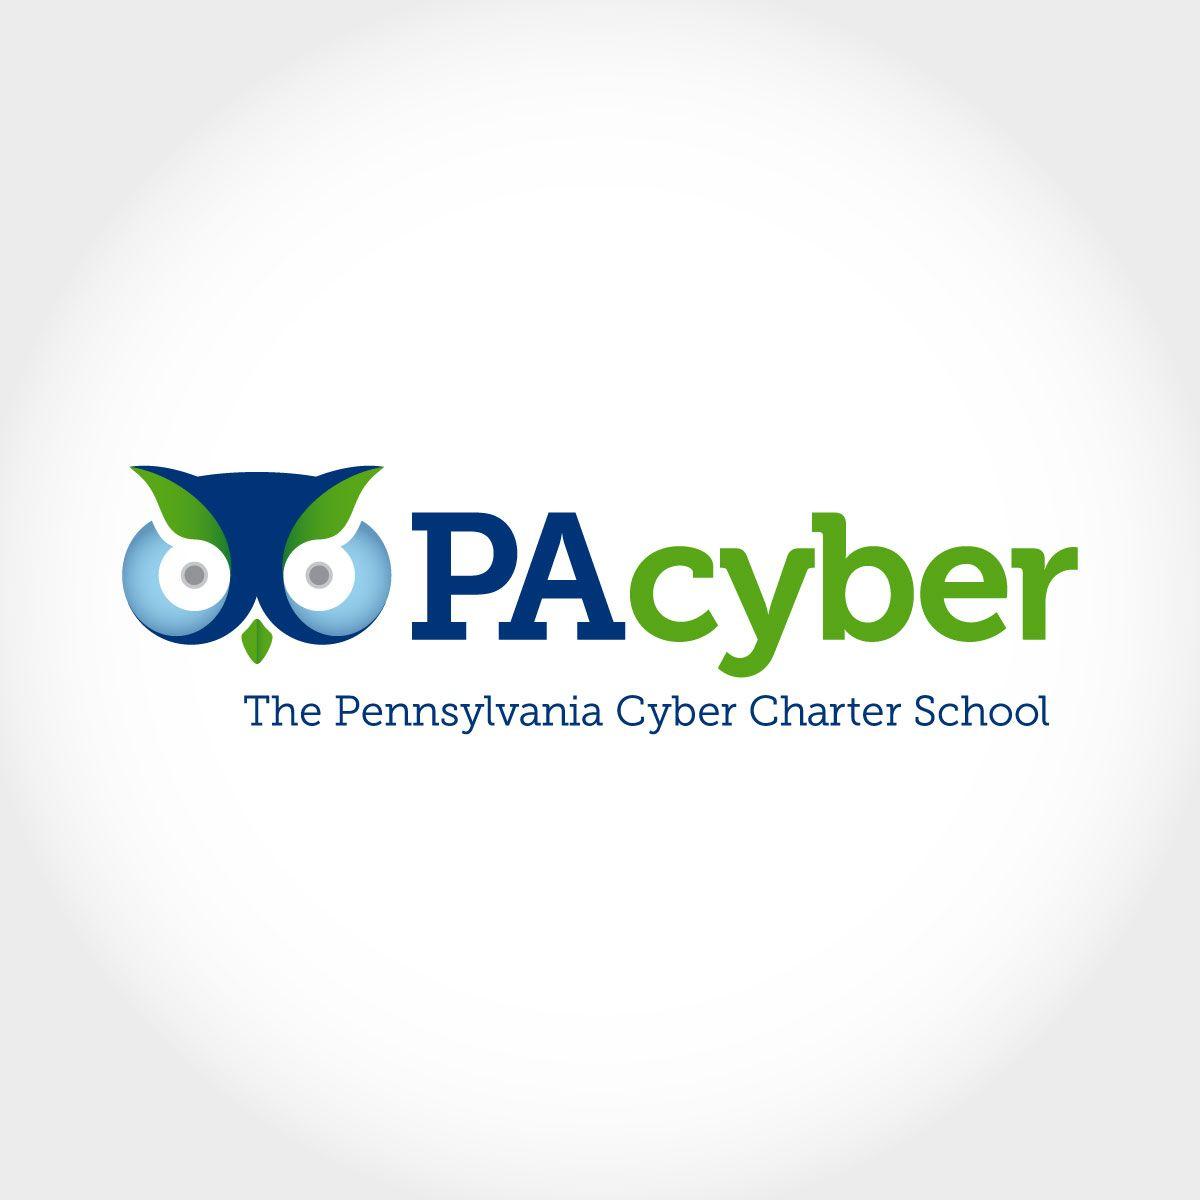 The Pennsylvania Logo - The Pennsylvania Cyber Charter School